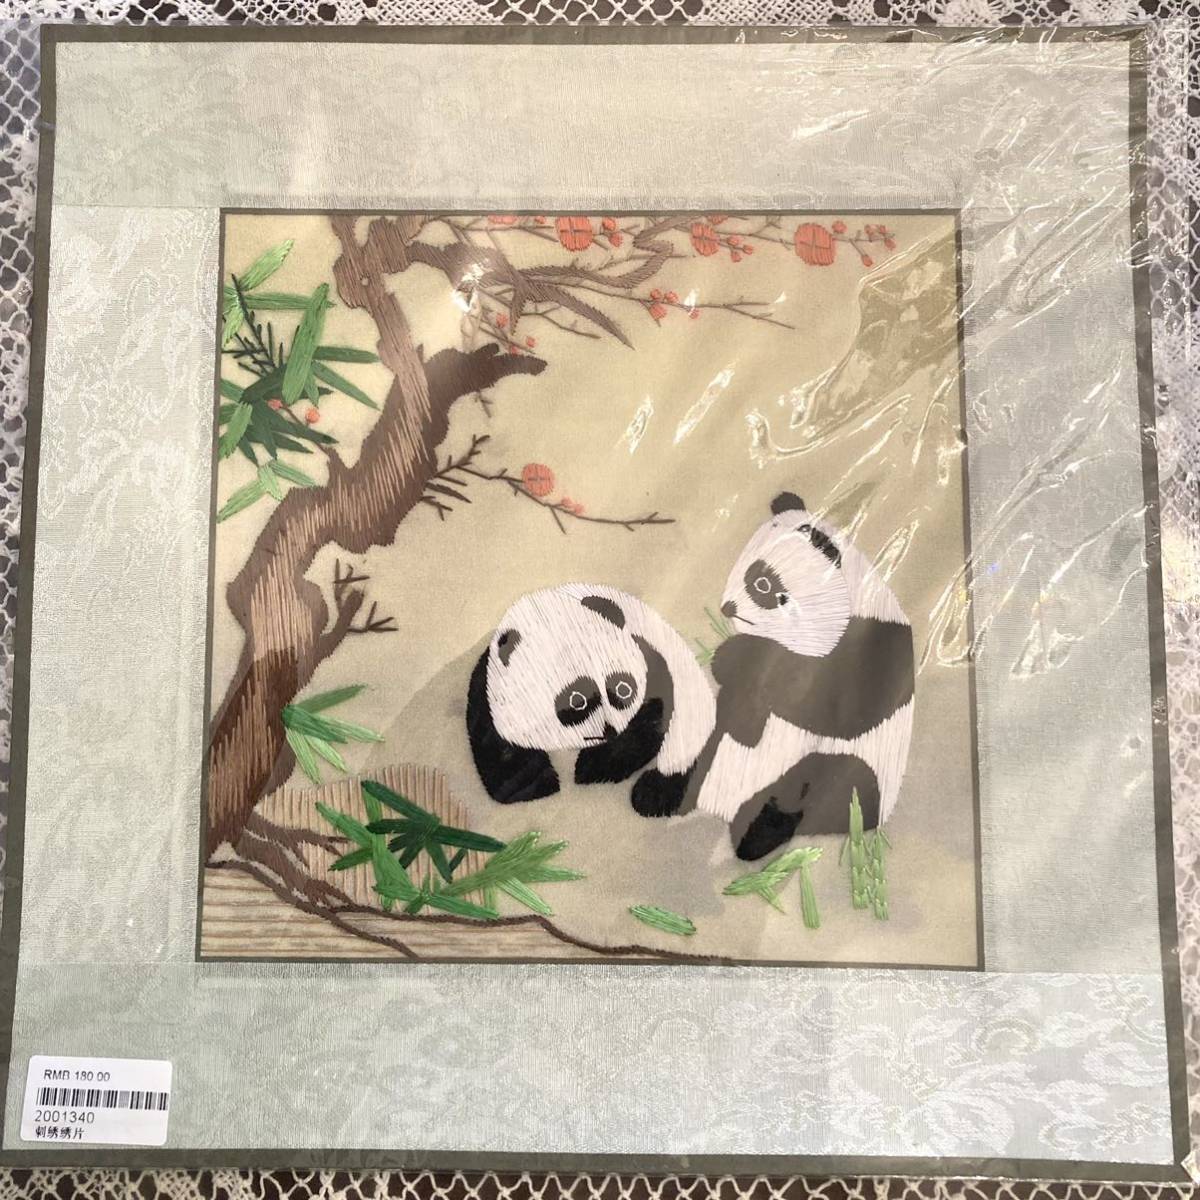 Nuevo, sin abrir, Tapiz bordado detallado de panda chino, no usado, artesanías chinas bordadas a mano, de coser, bordado, bordado, Producto terminado